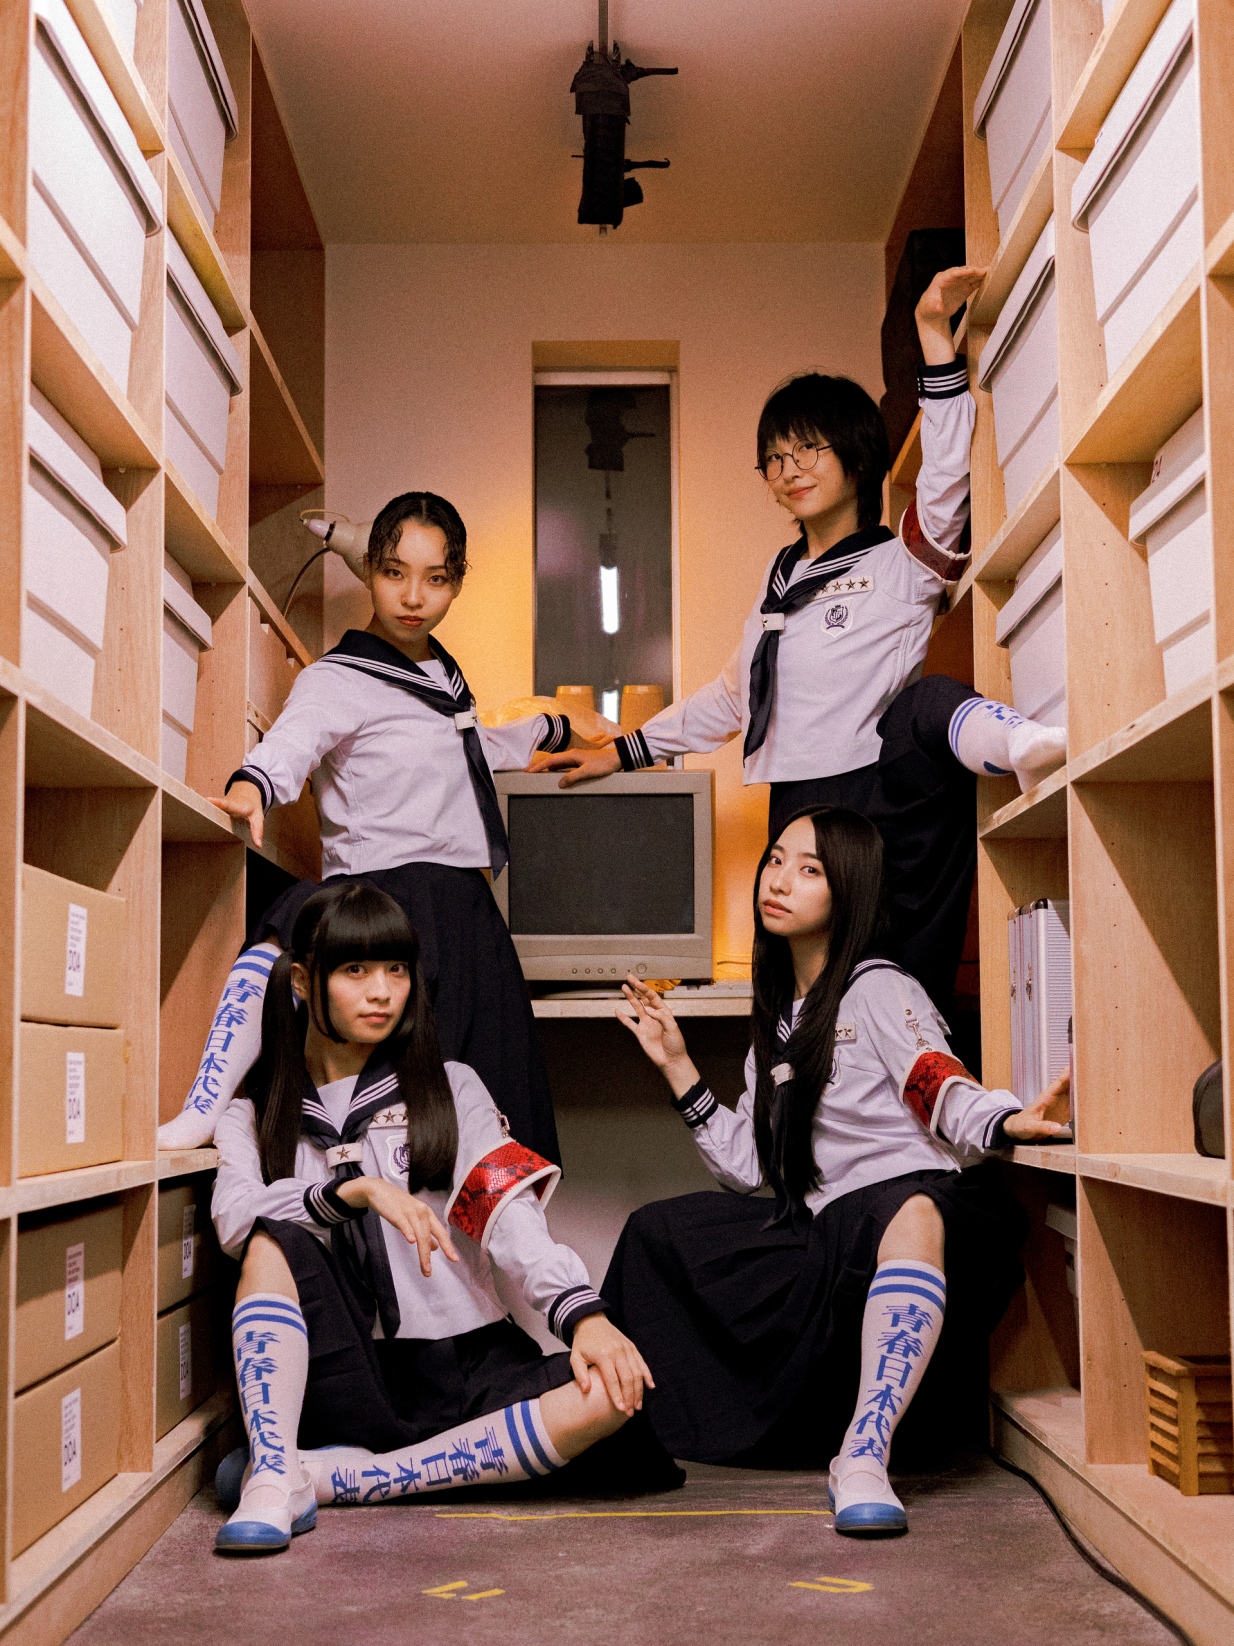 Four asian girls posing in a room full of bookshelves.